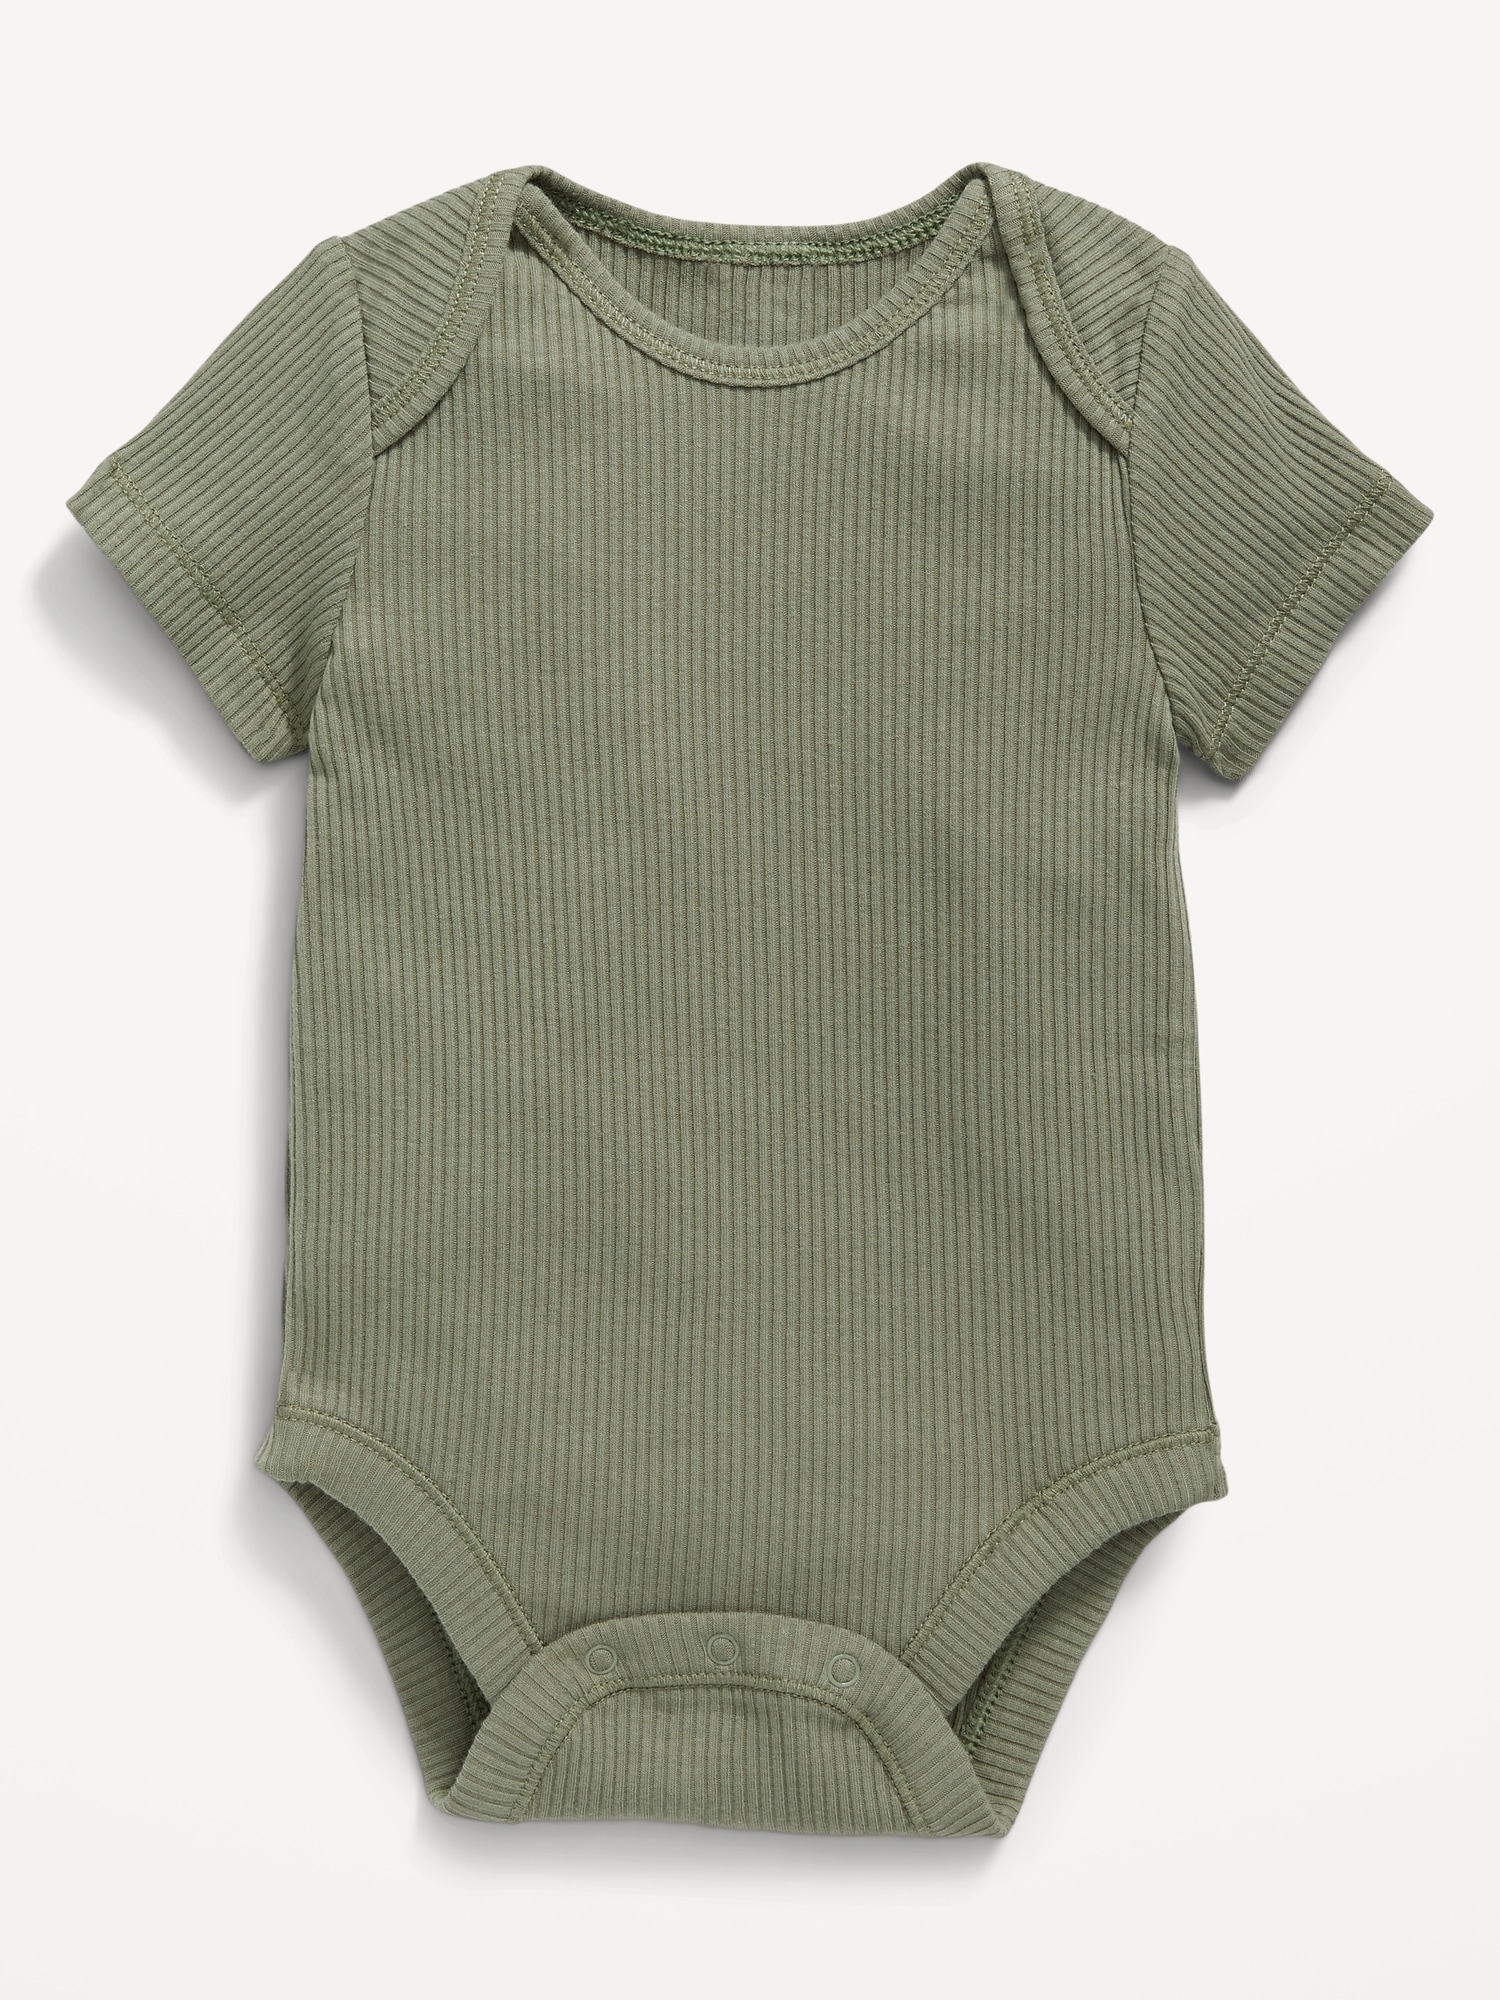 Unisex Short-Sleeve Bodysuit for Baby Hot Deal